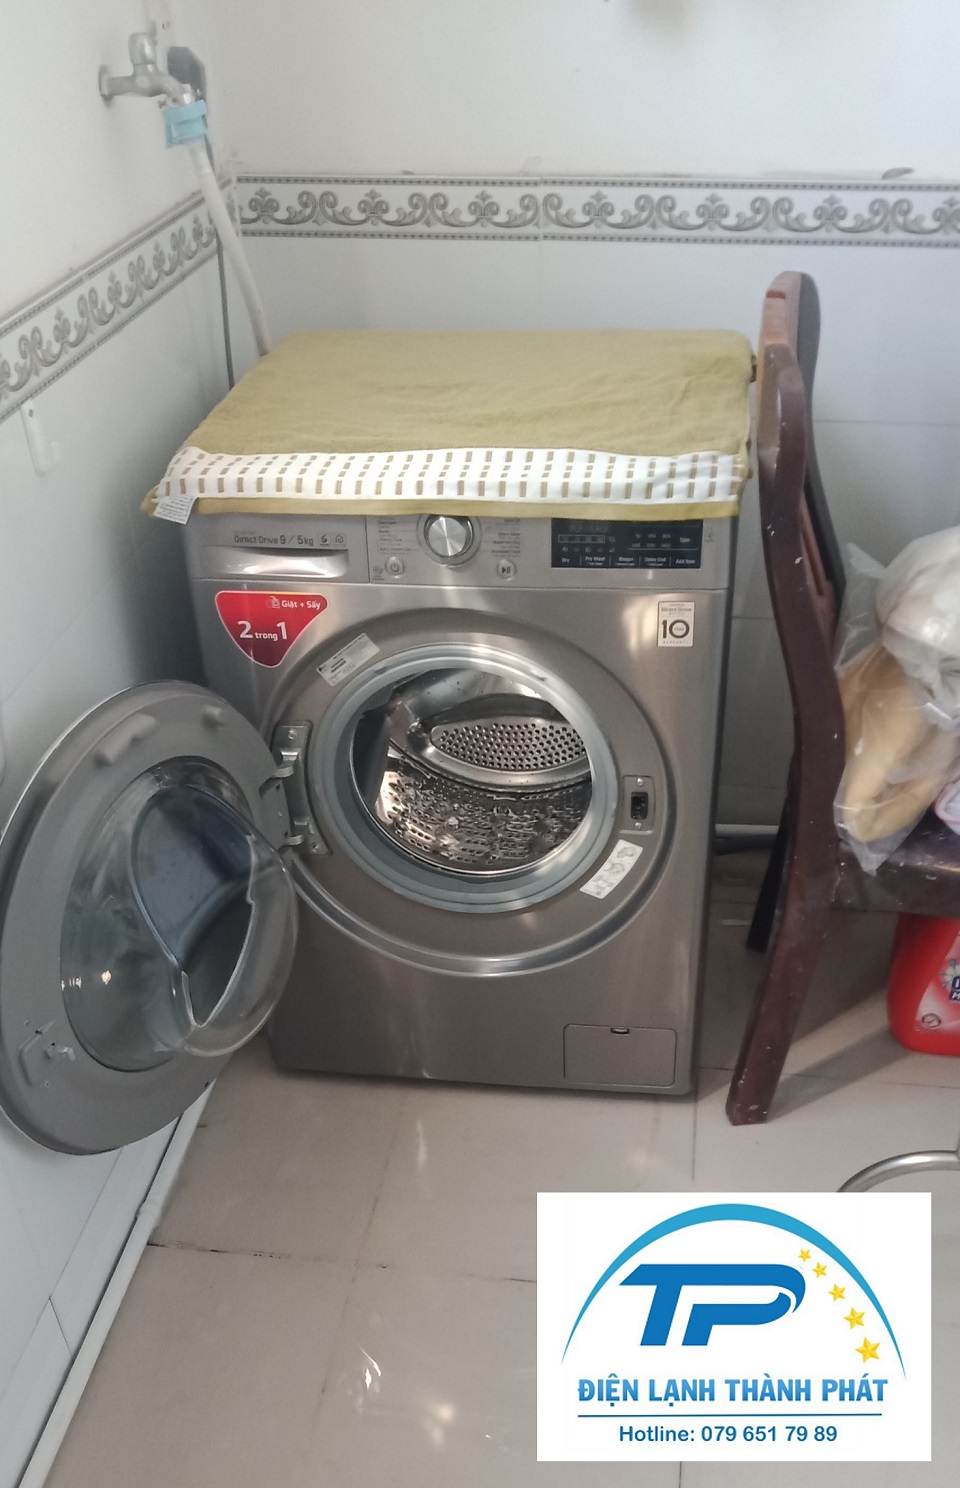 Sửa máy giặt Quận 7 Điện lạnh Thành Phát sở hữu đội thợ giàu kinh nghiệm